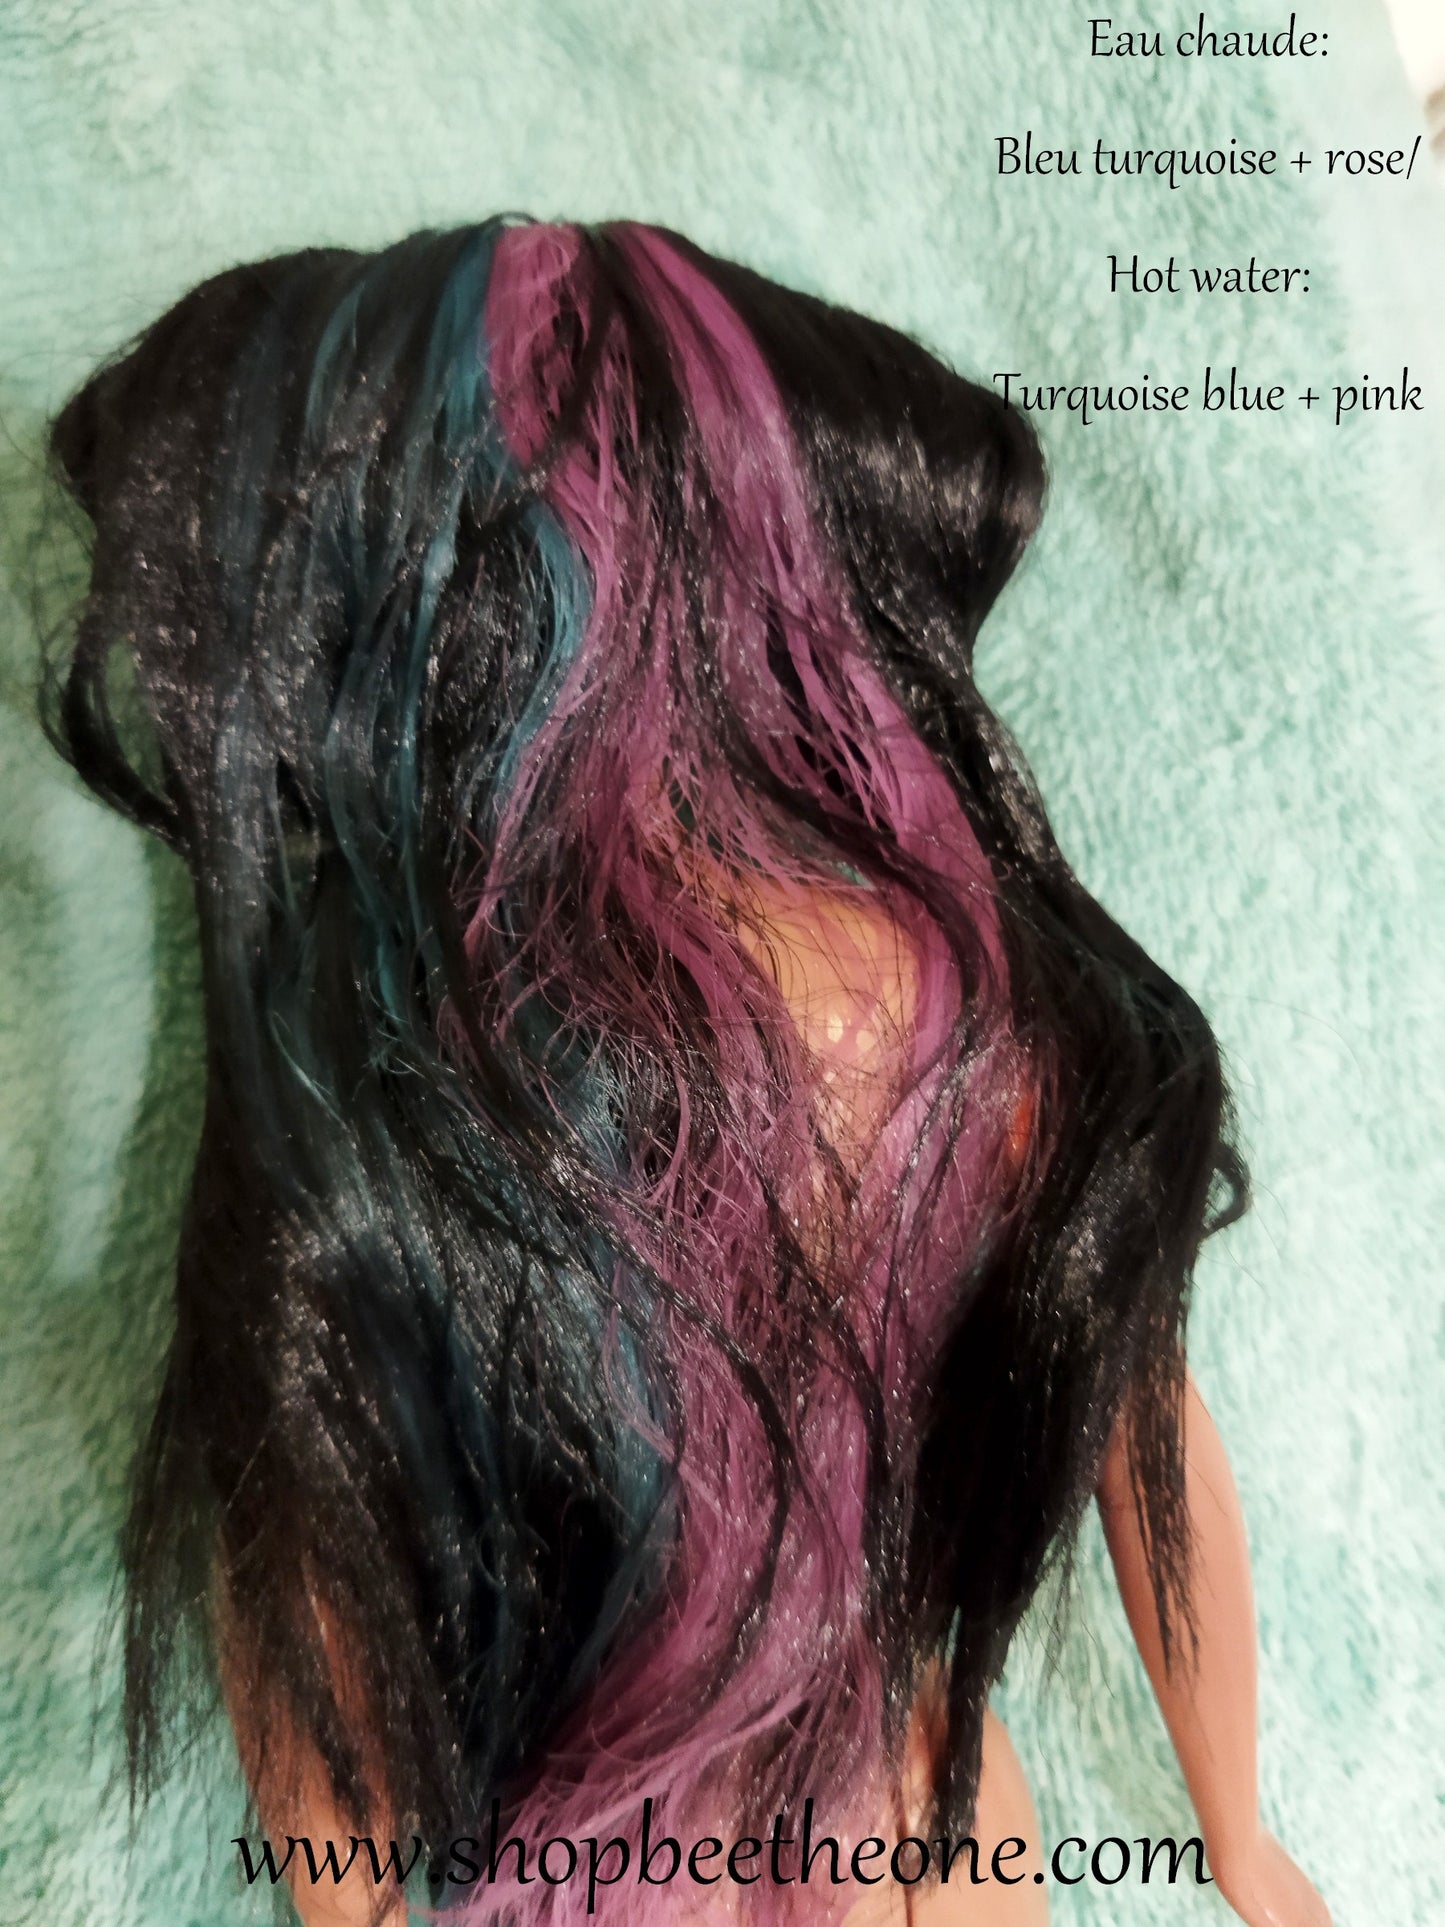 Pocahontas Color Splash Hair - Mattel 1995 - Poupée - Robe